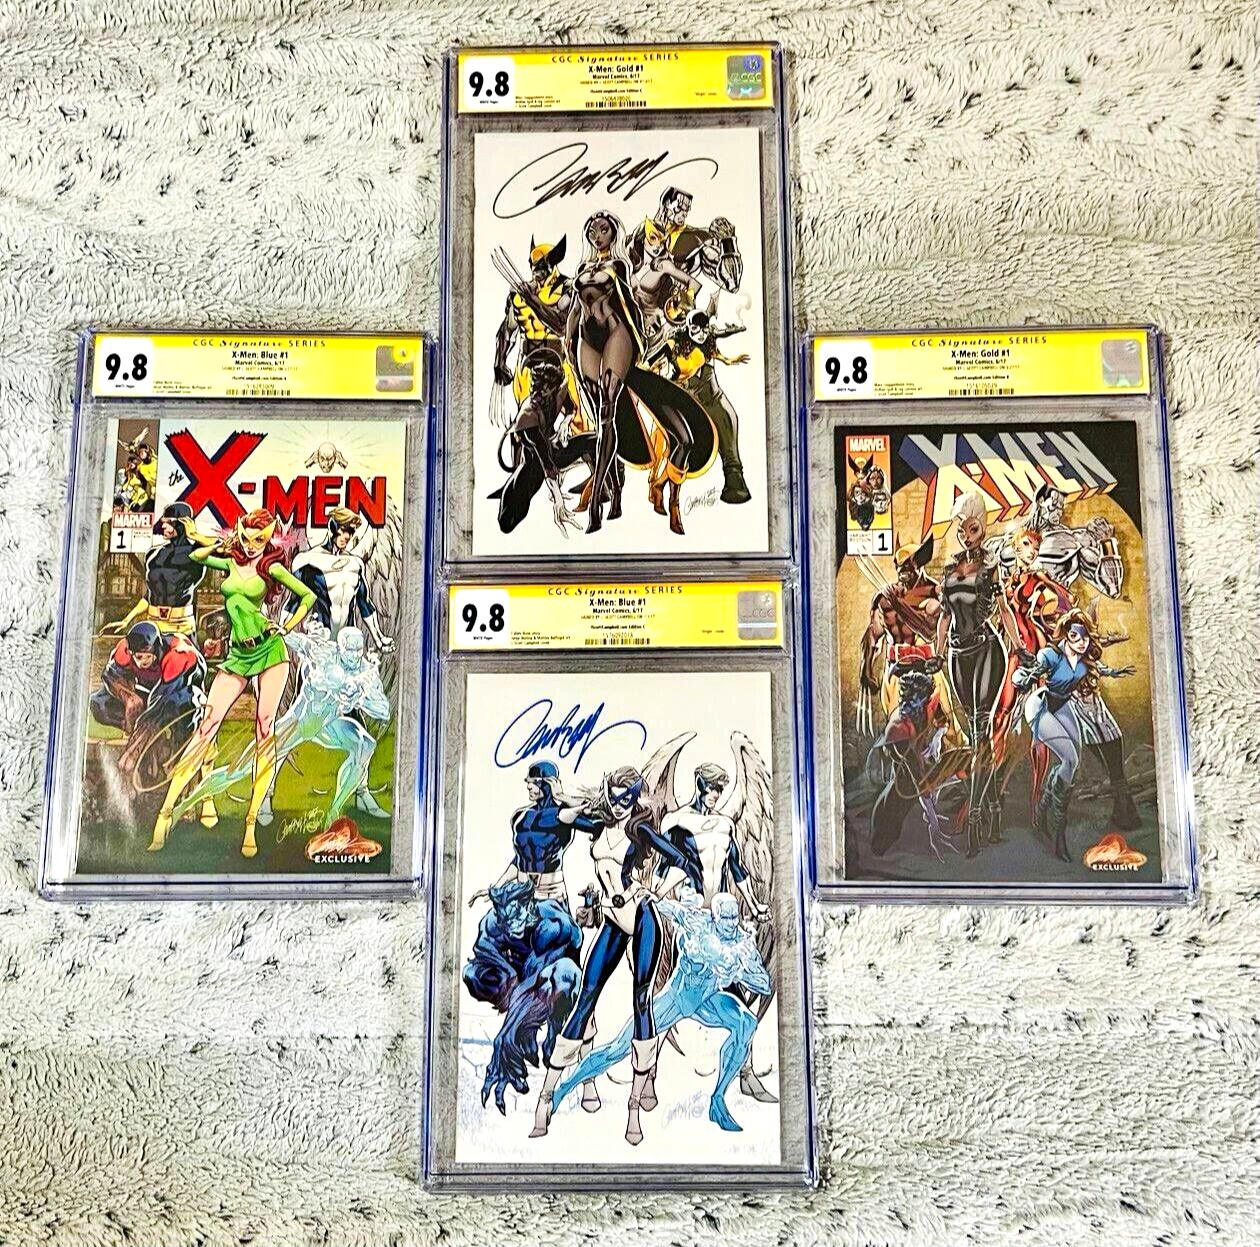 X-Men: Blue #1 & X-Men: Gold #1 SIGNED J. Scott Campbell CGC SS 9.8